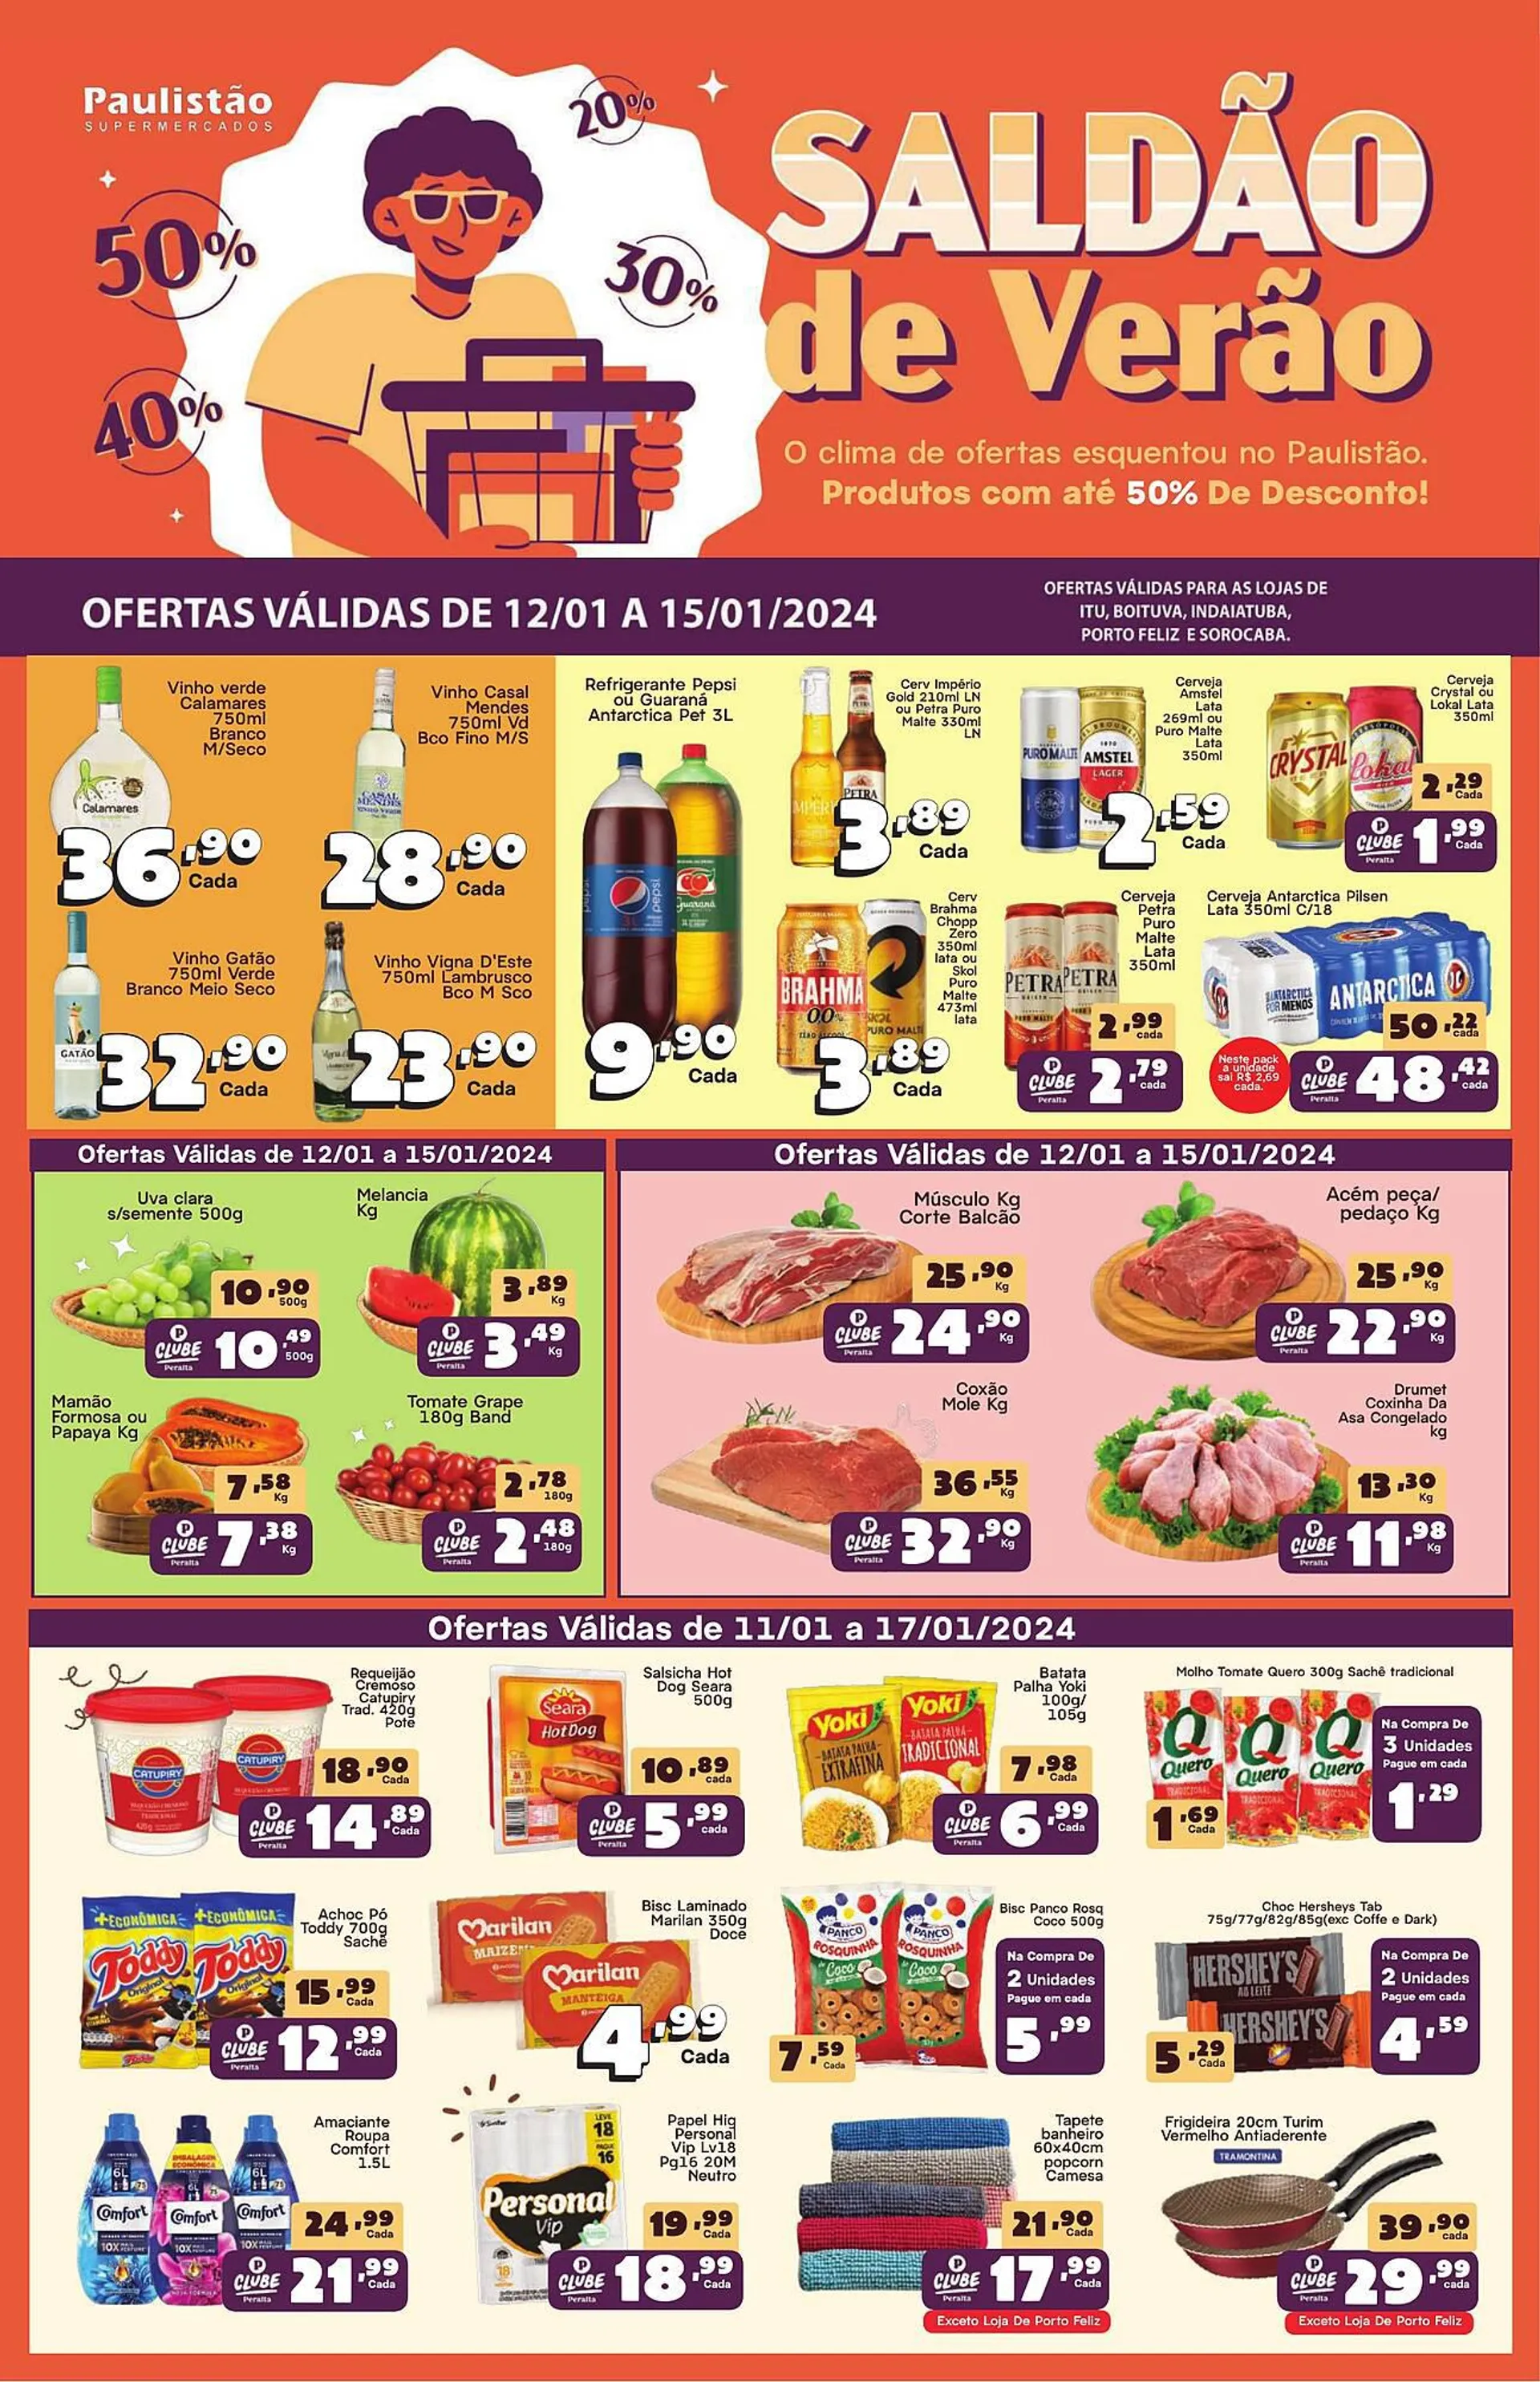 Encarte de Catálogo Paulistão Supermercados 11 de janeiro até 17 de janeiro 2024 - Pagina 